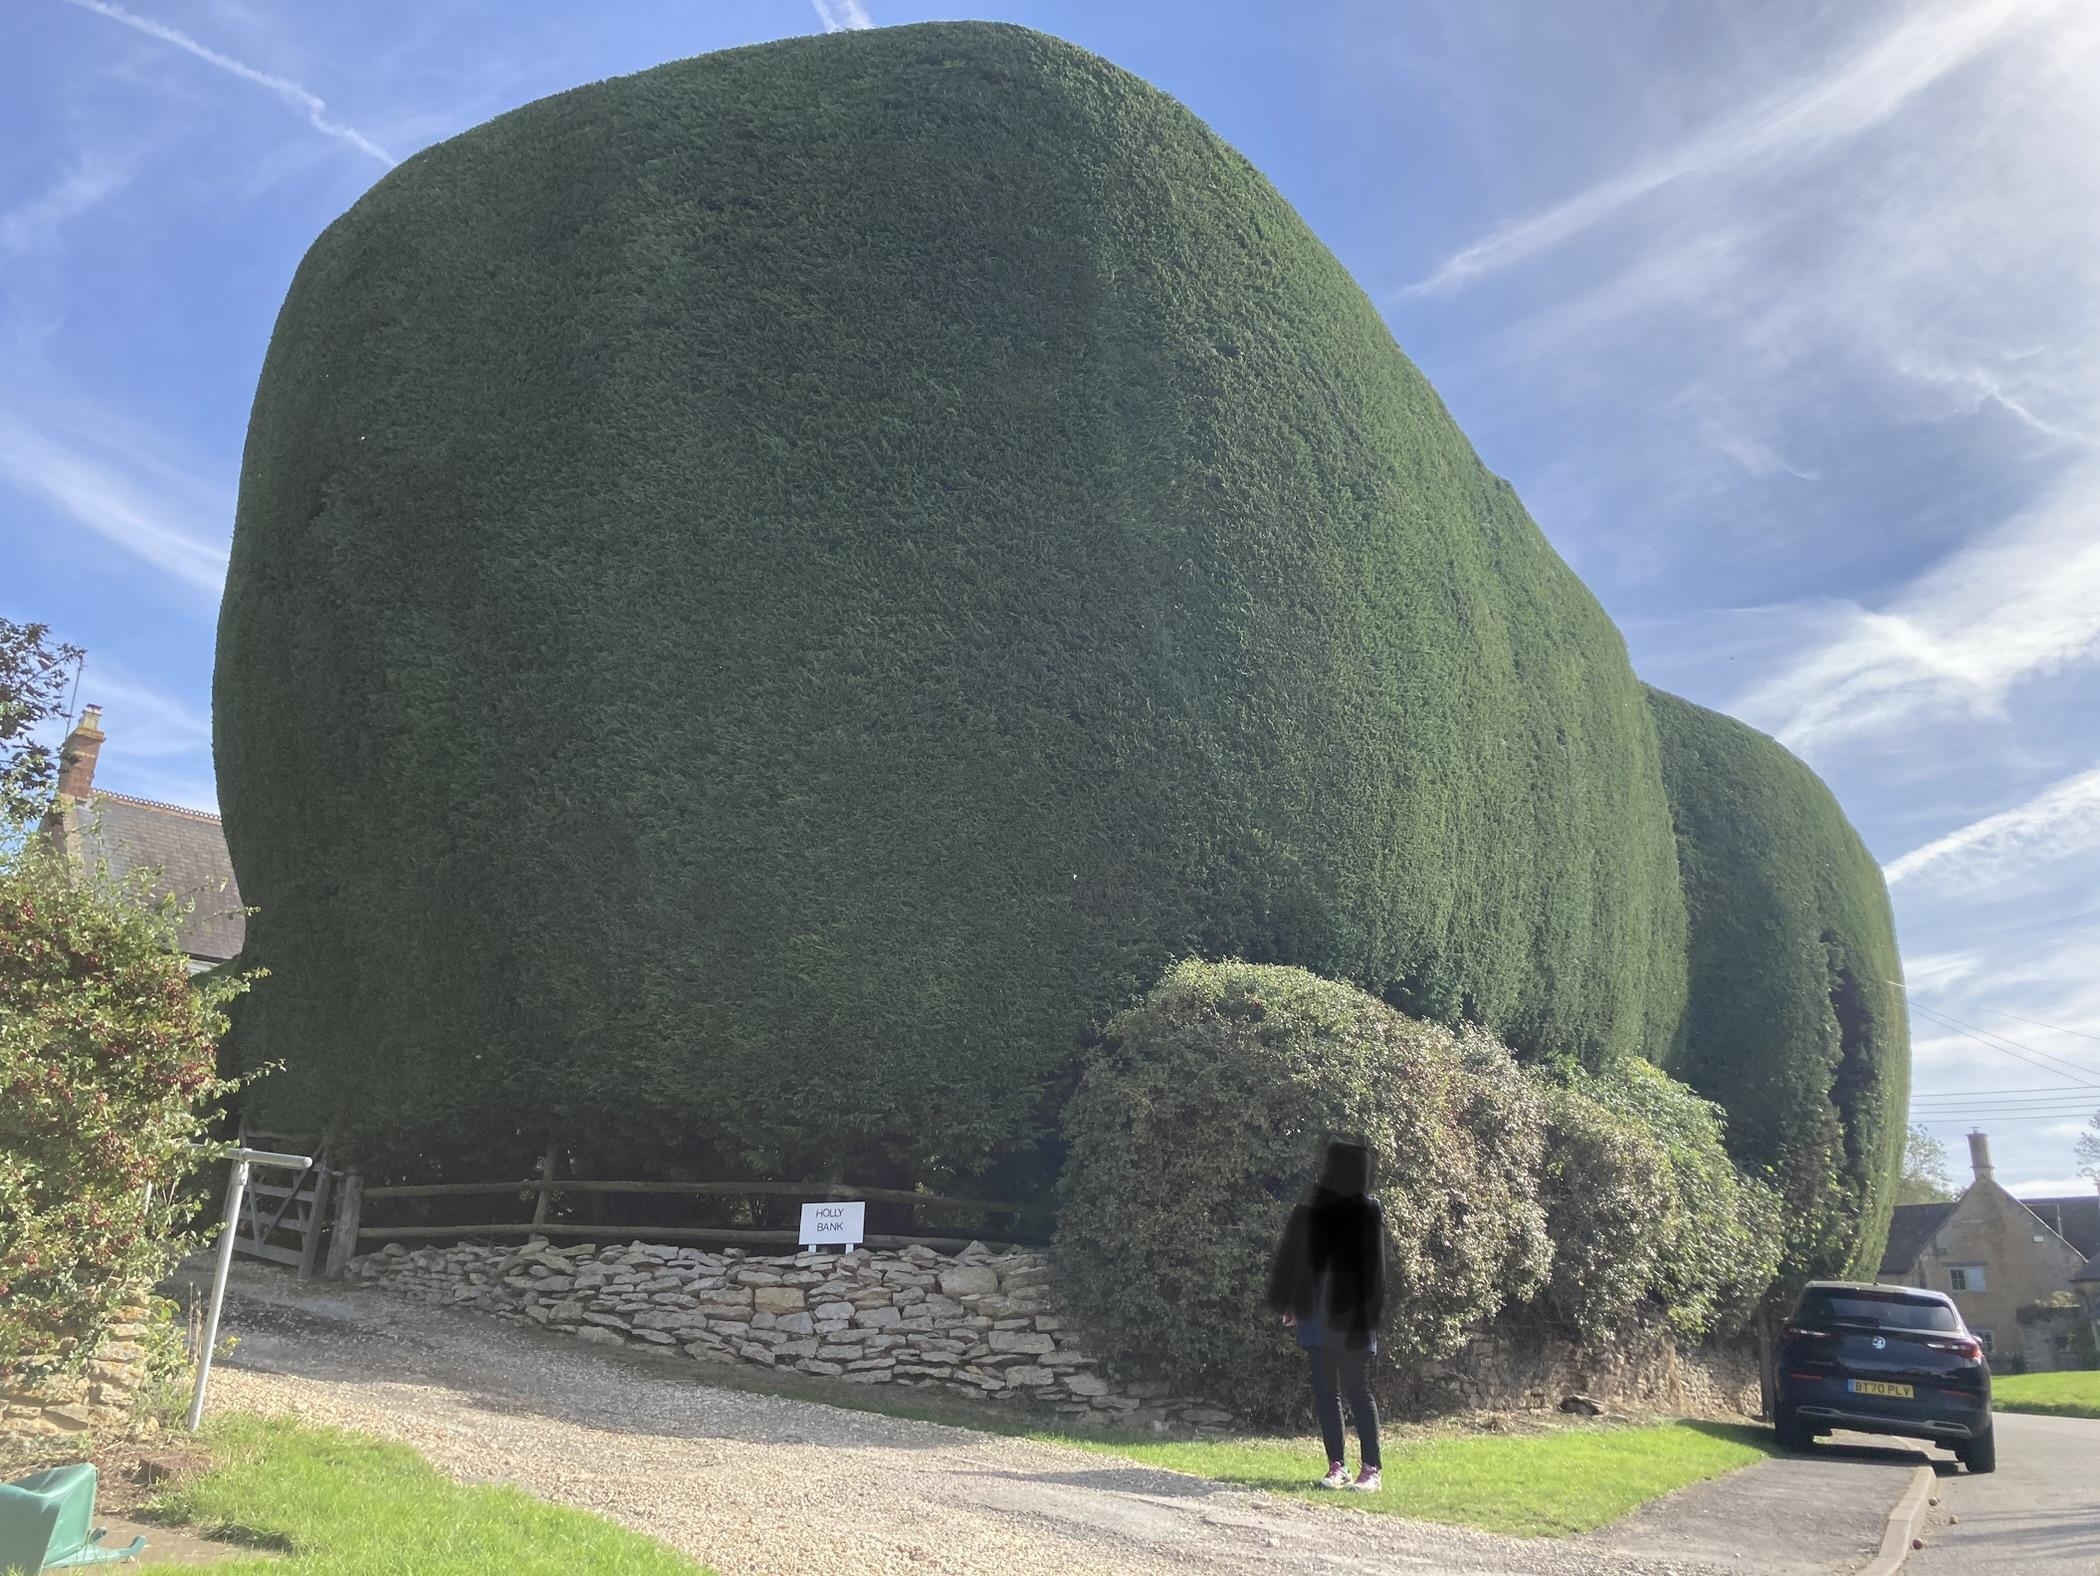 a giant hedge